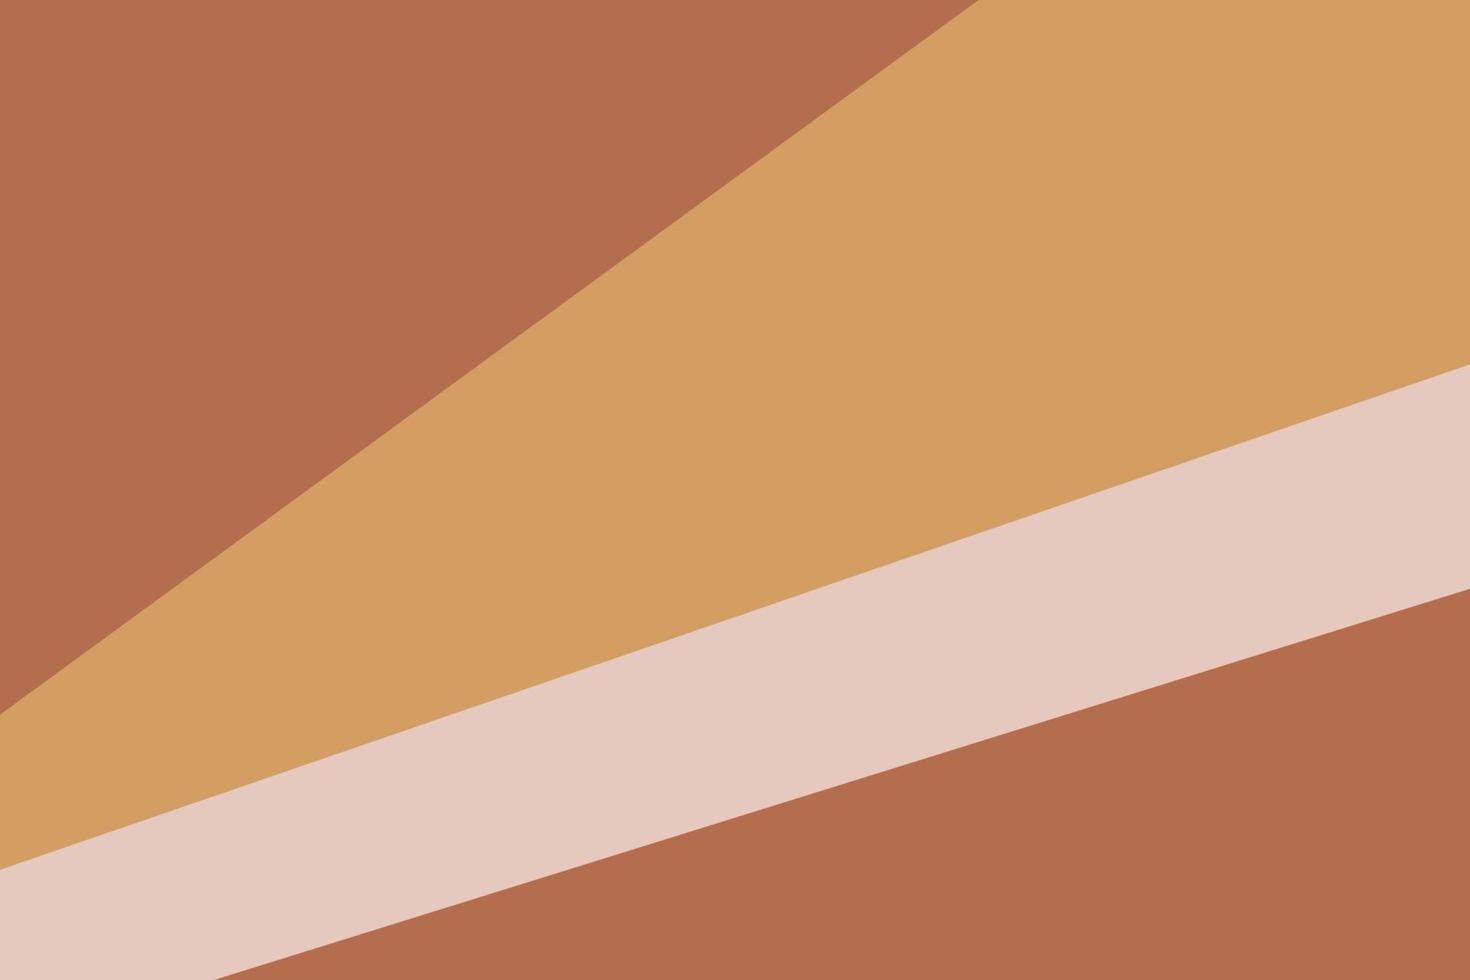 plantillas elegantes con formas orgánicas abstractas y líneas en colores nude. fondo pastel en estilo minimalista. ilustración vectorial contemporánea. fondo neutro en estilo minimalista vector